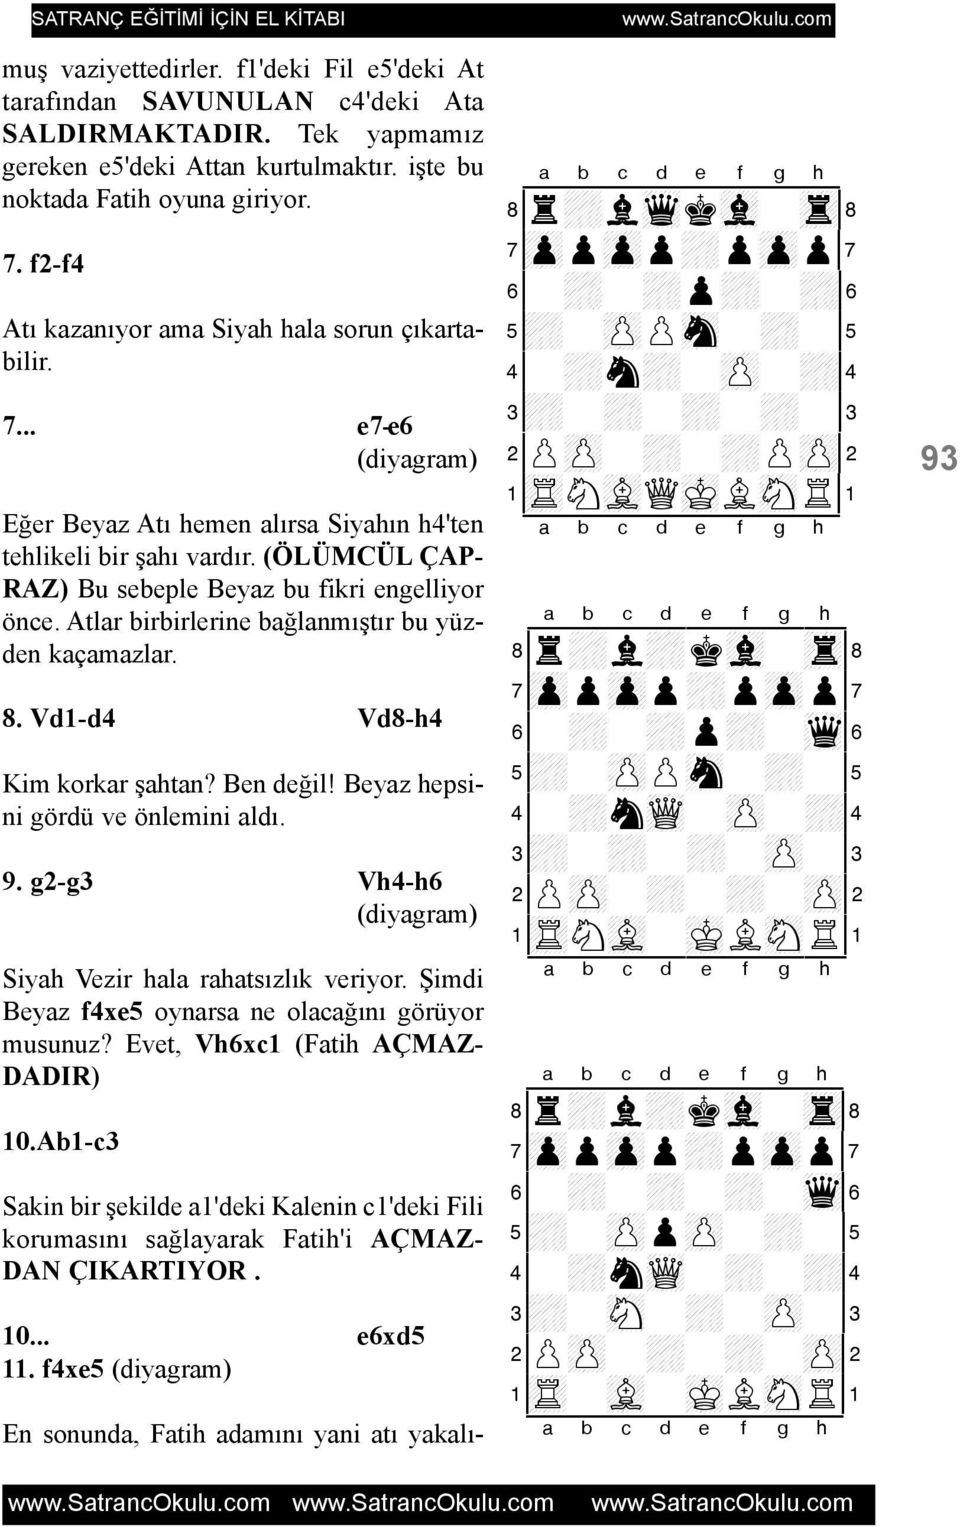 Atlar birbirlerine baðlanmýþtýr bu yüzden kaçamazlar. 8. Vd1-d4 Vd8-h4 Kim korkar þahtan? Ben deðil! Beyaz hepsini gördü ve önlemini aldý. 9. g2-g3 Vh4-h6 Siyah Vezir hala rahatsýzlýk veriyor.